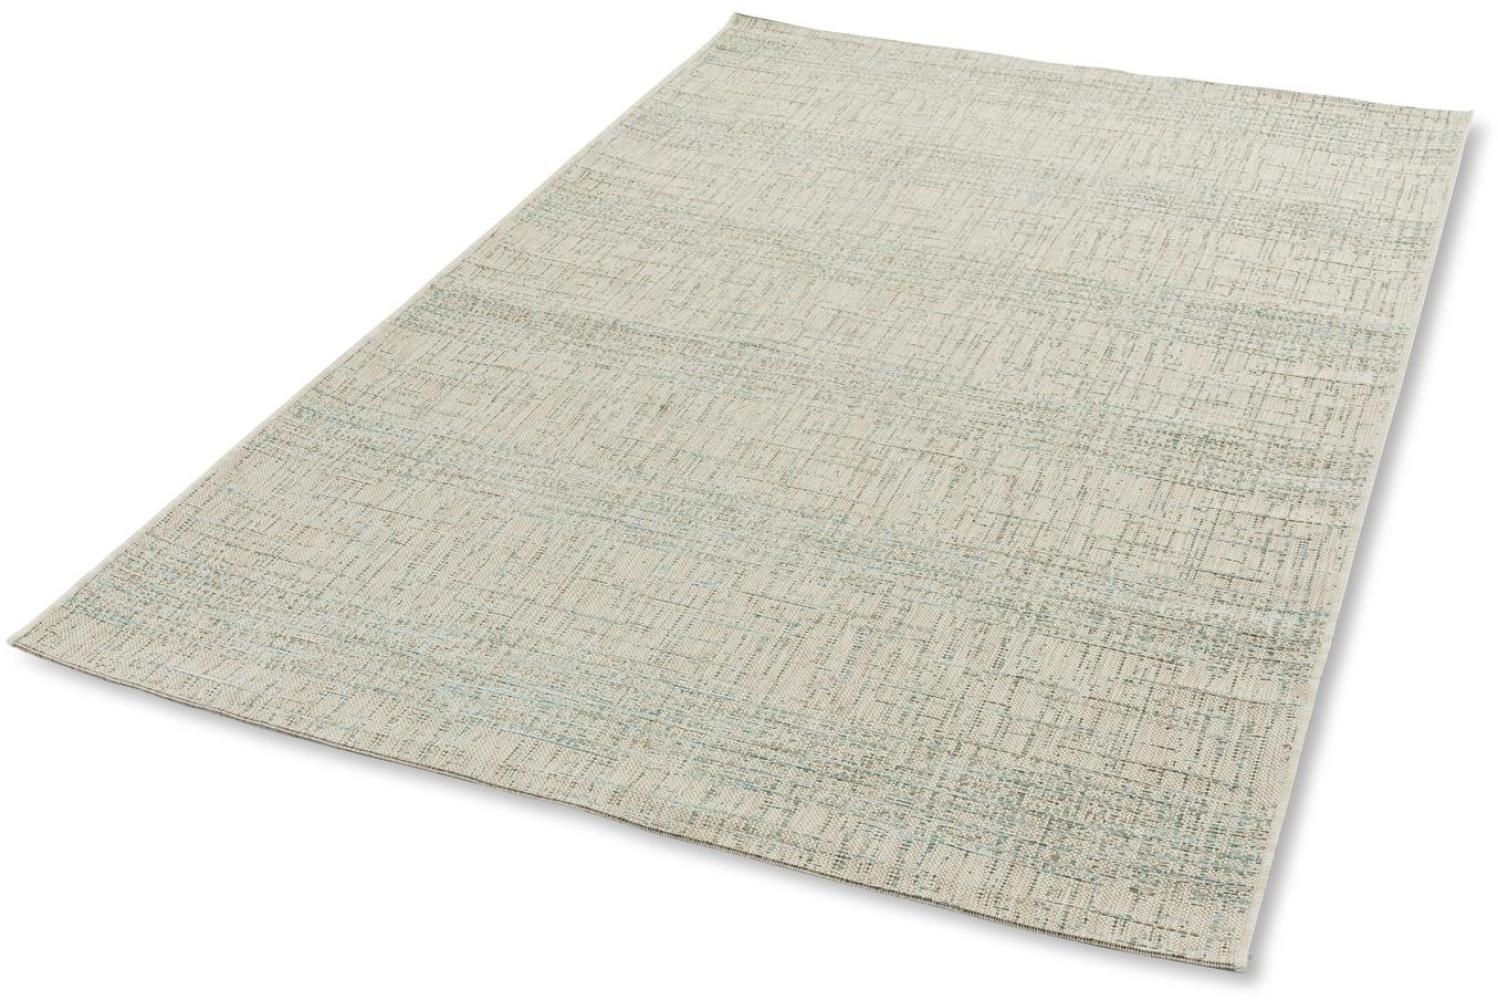 Teppich in aqua aus 100% Polypropylen - 290x200x0,5cm (LxBxH) Bild 1